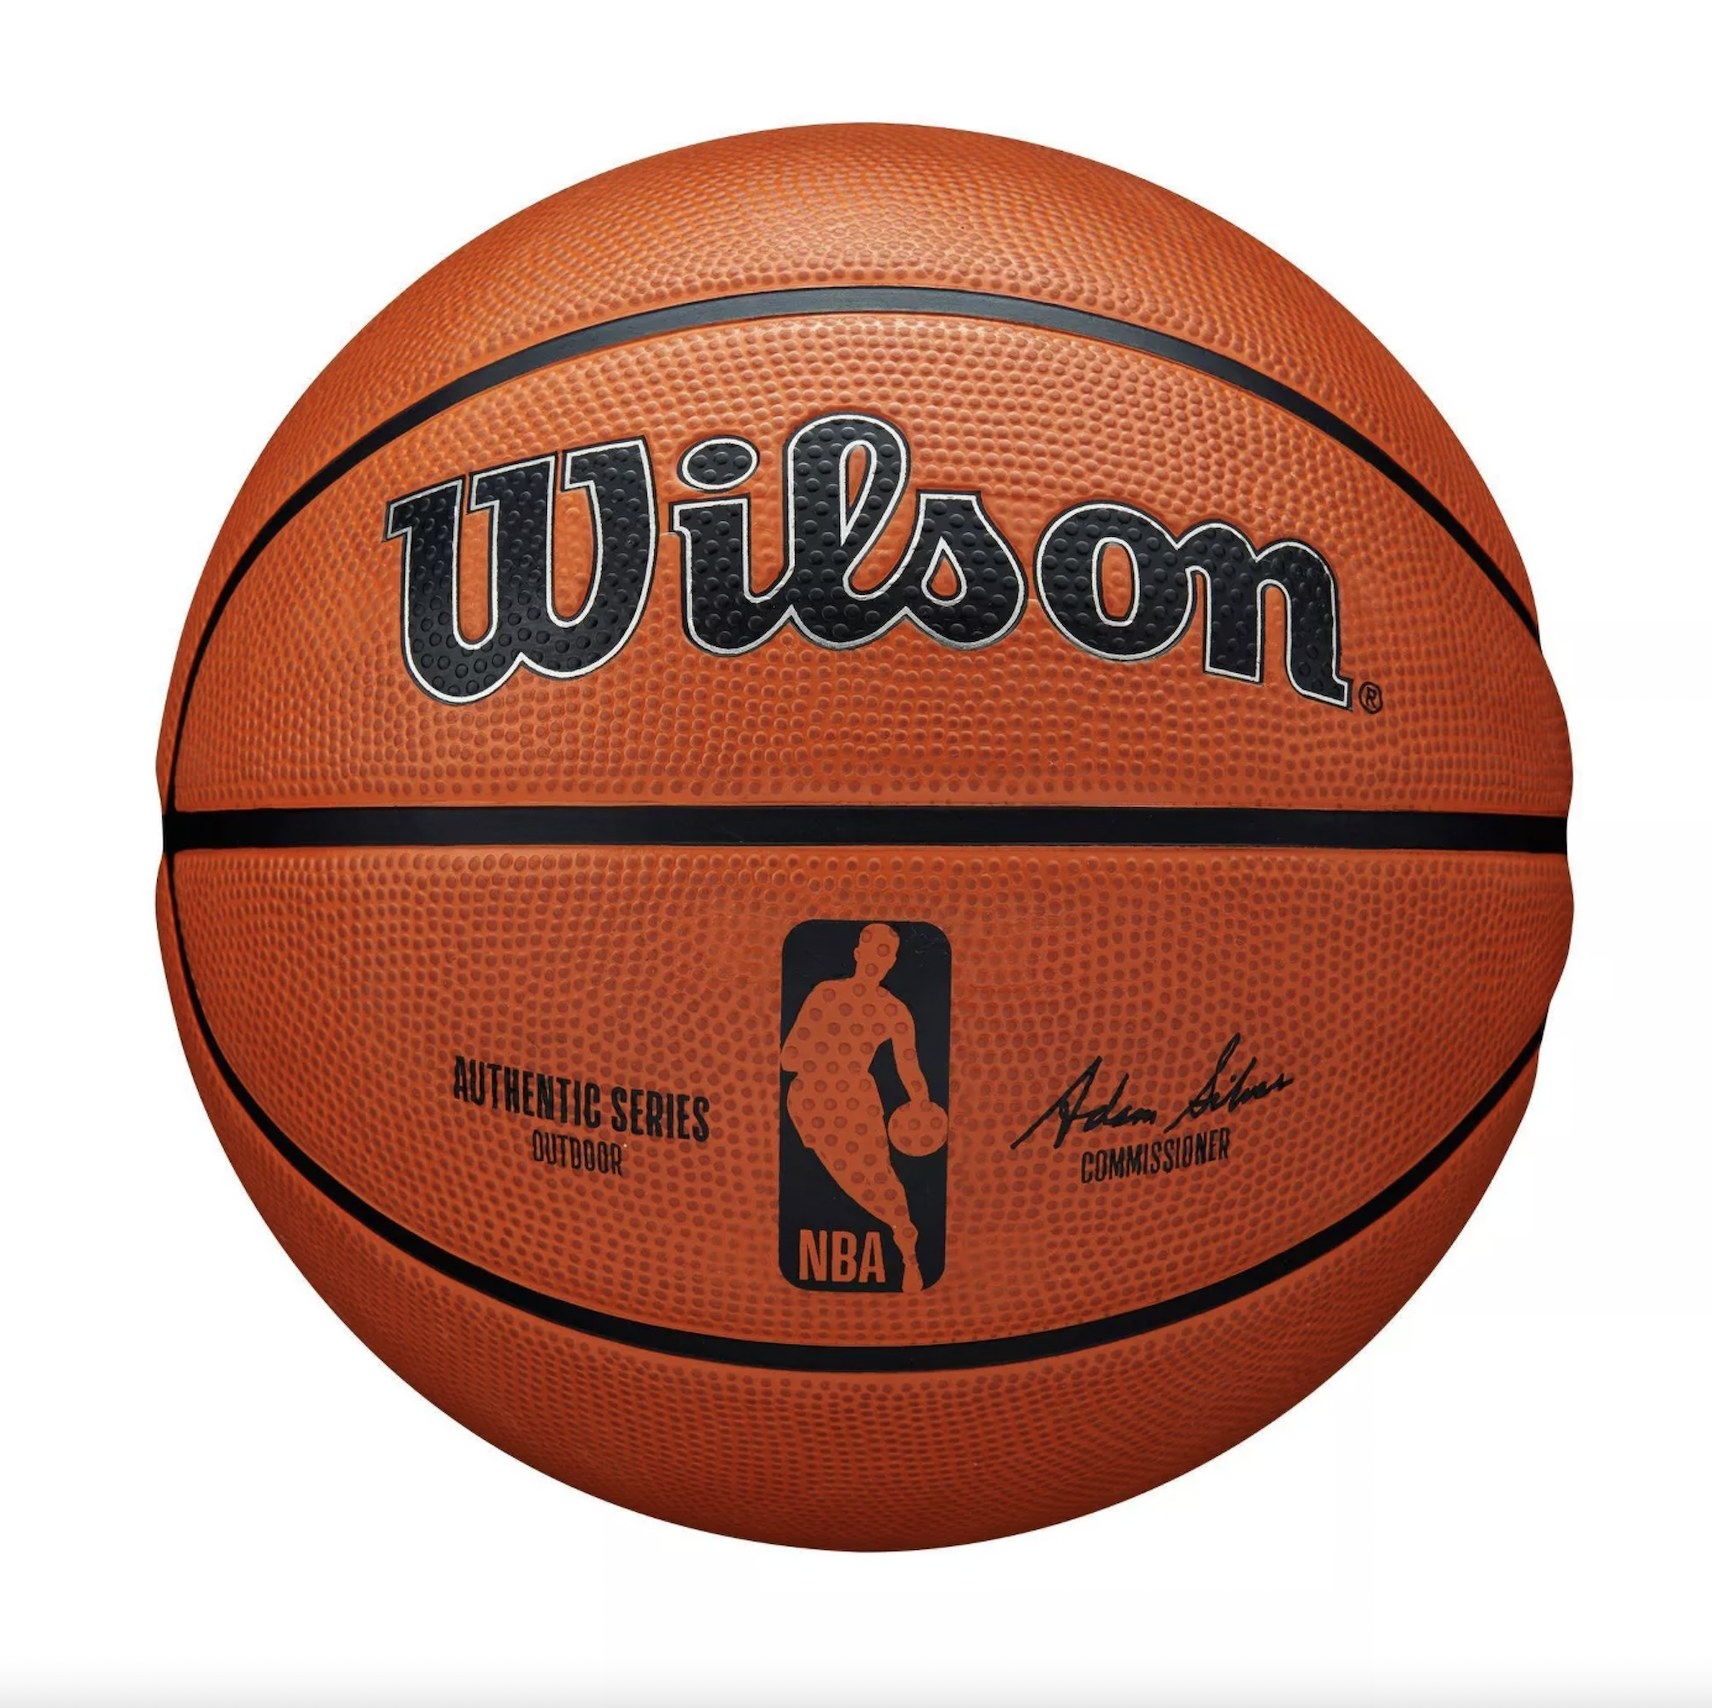 The Wilson Basketball